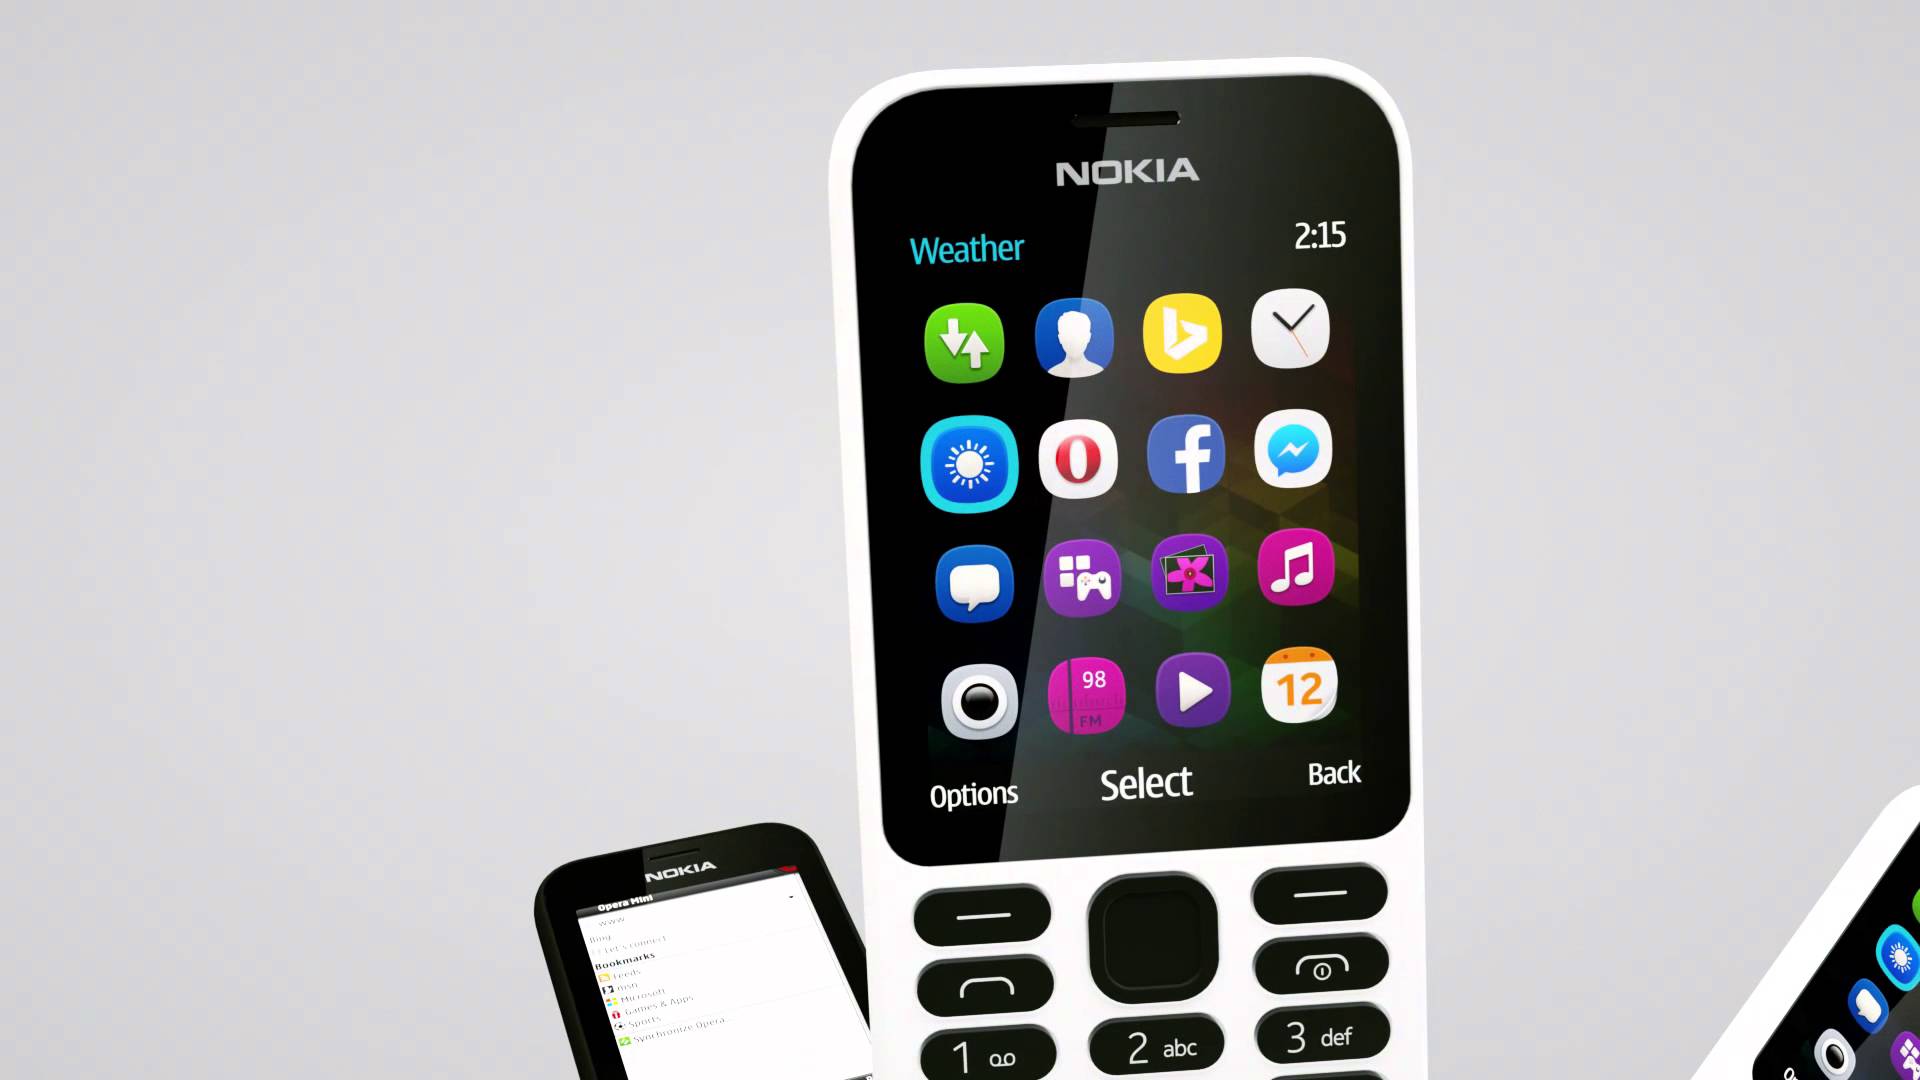 Nokia 215 cũng đáp ứng được những nhu cầu giải trí, tìm kiếm thông tin của người dùng